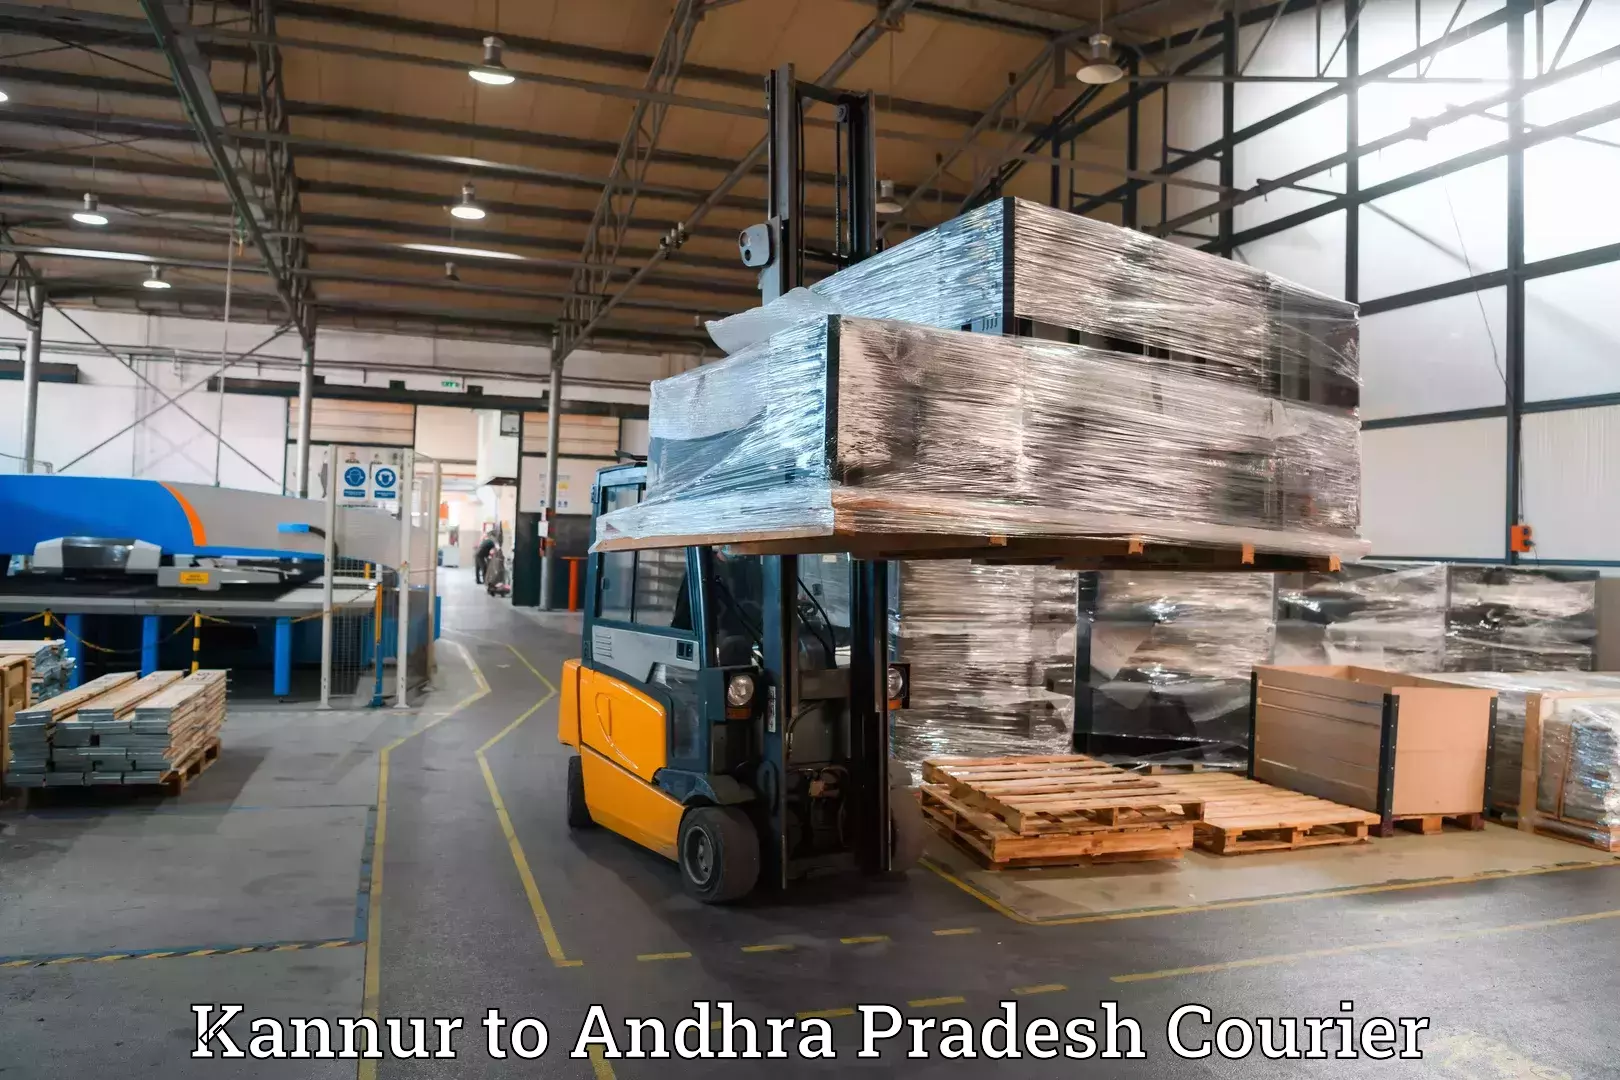 Baggage transport scheduler Kannur to Andhra Pradesh